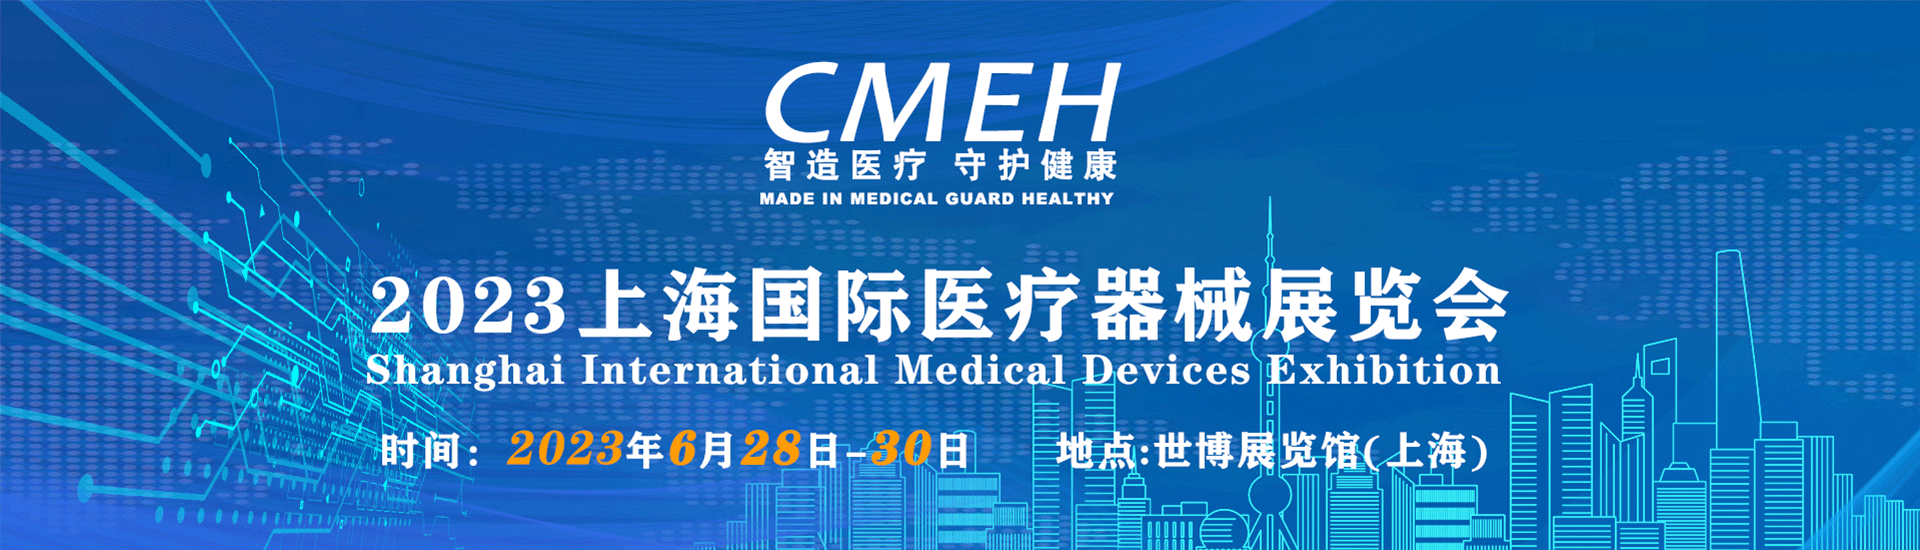 上海国际医疗器械展览会：展位全部售馨！